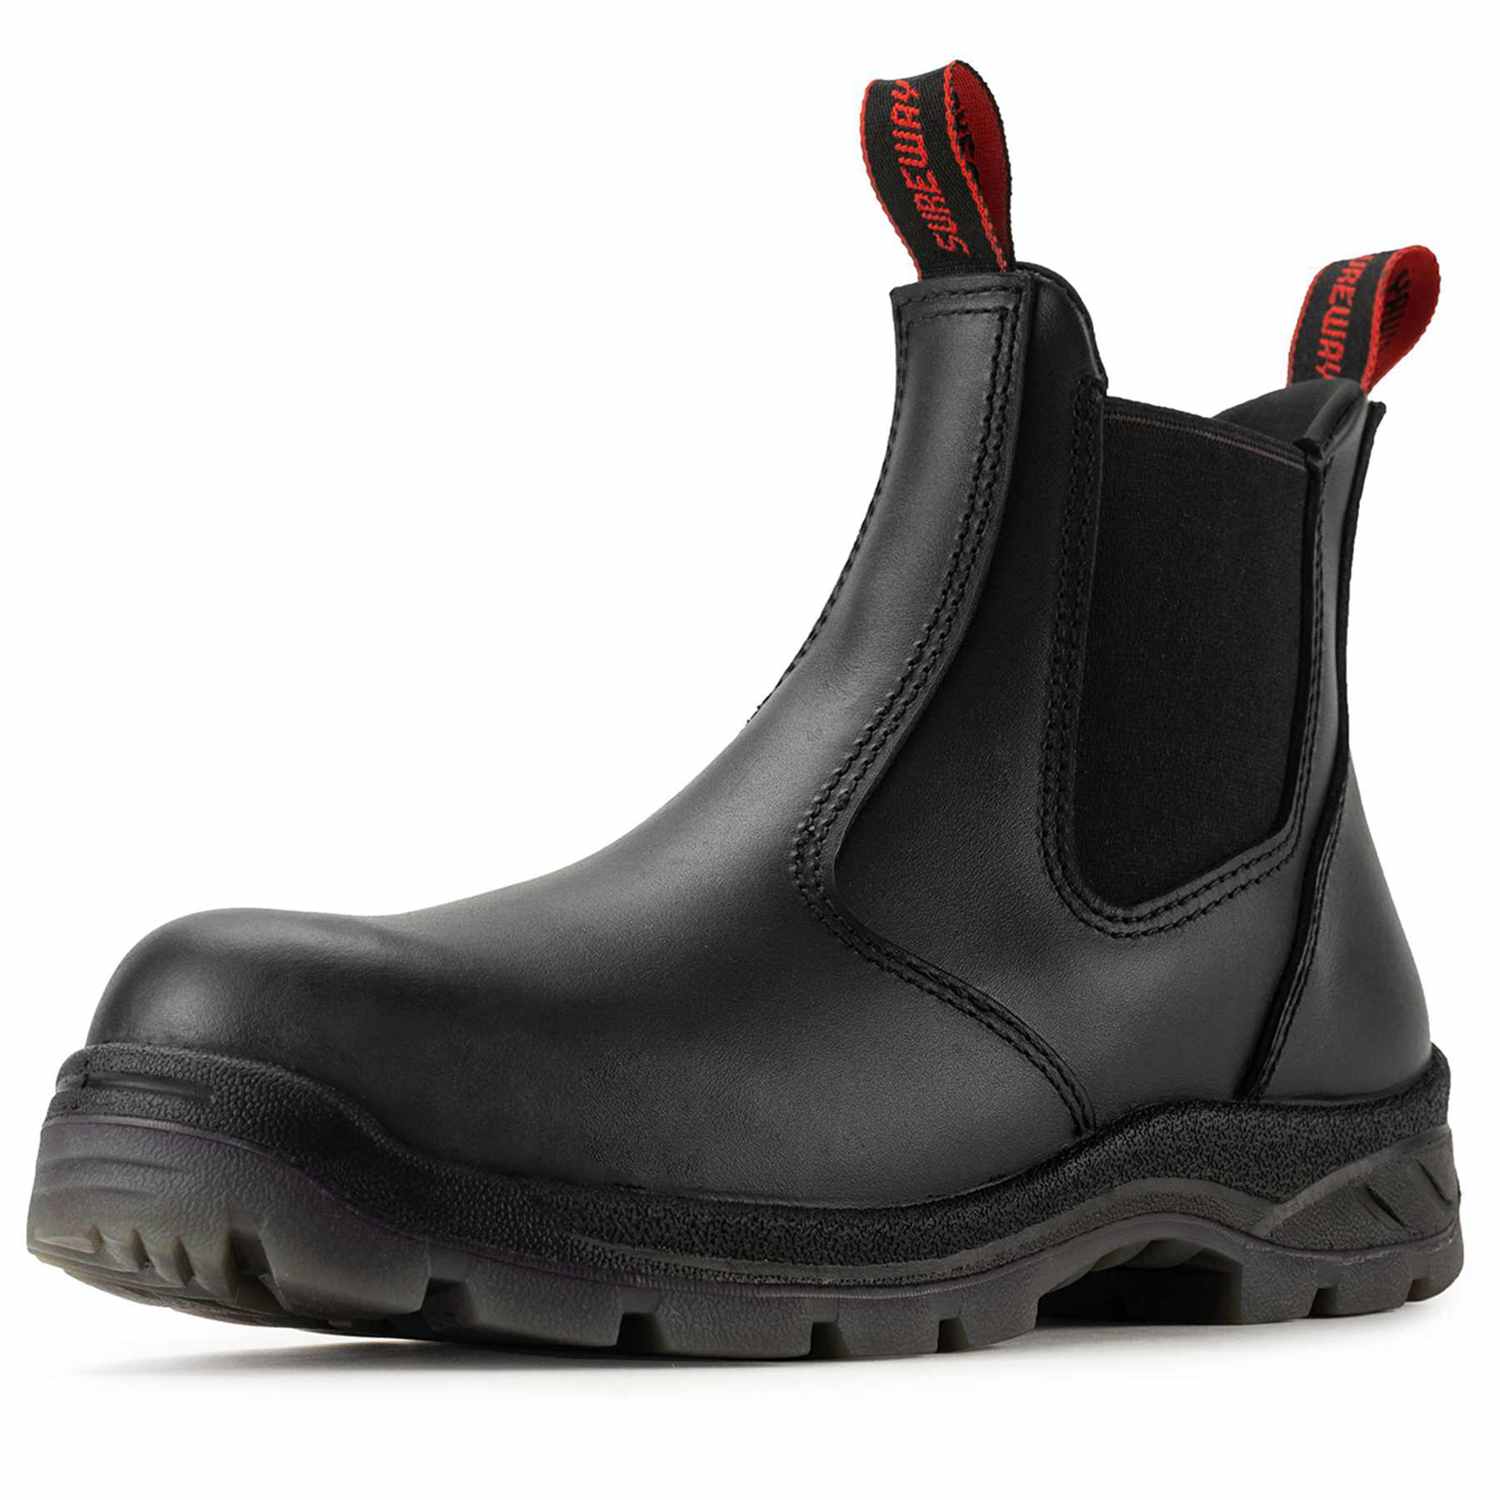 SUREWAY Mens Slip On Work boots black Composite Toe Boots Soft shoes